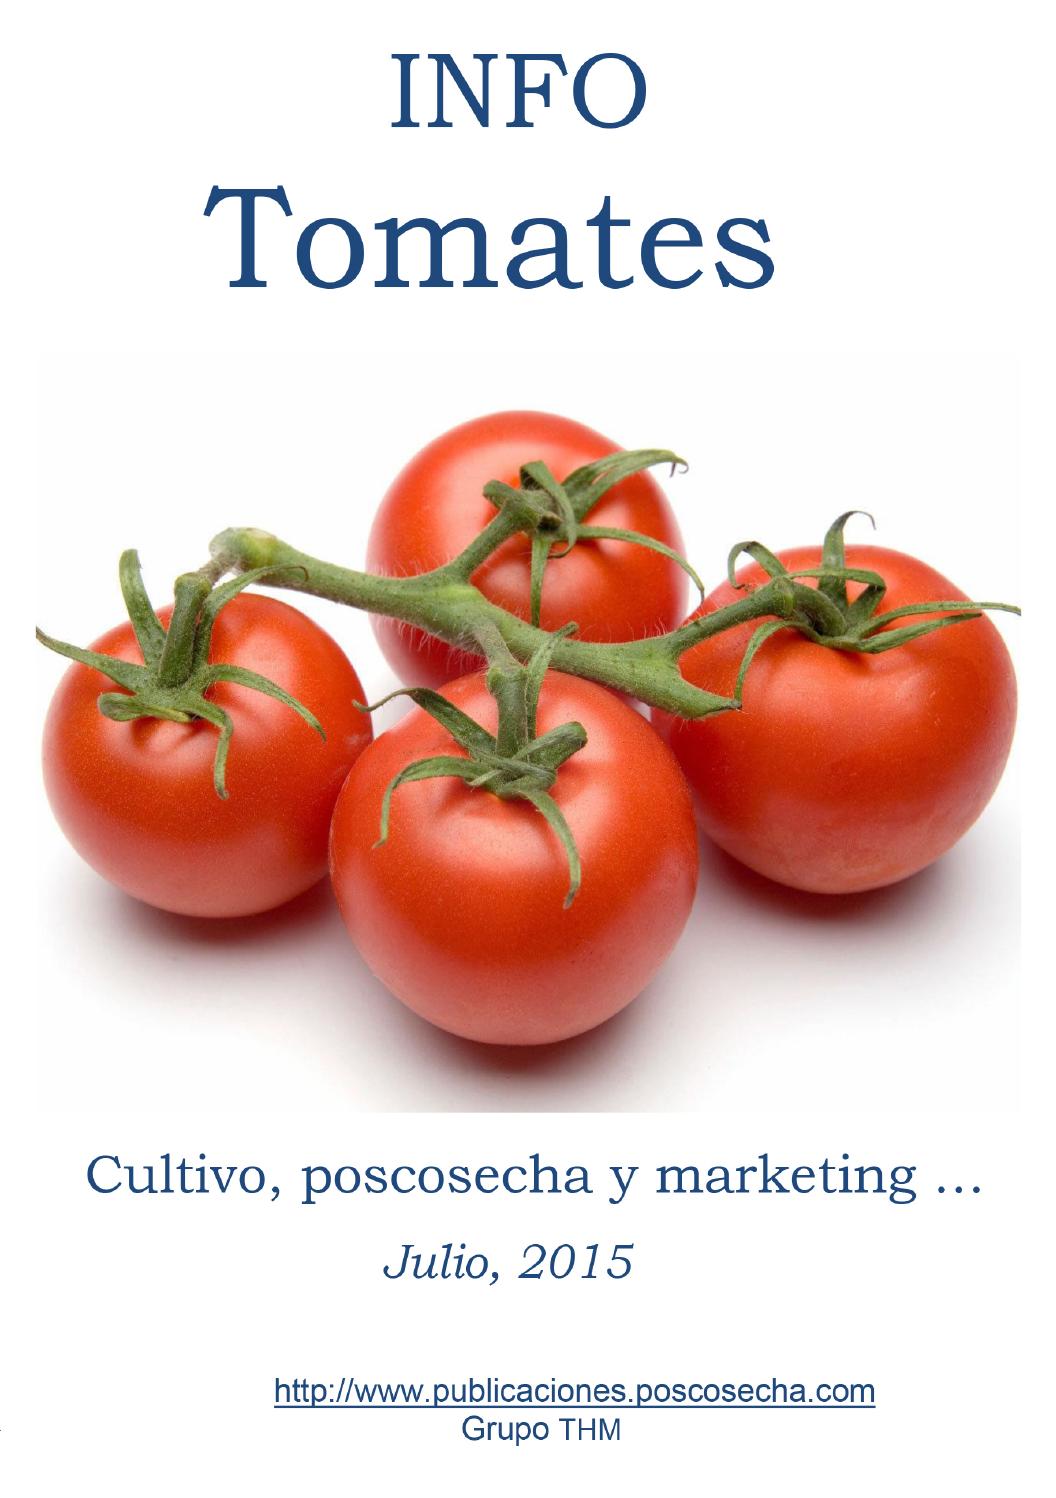 Pequeño pero prolífico: el tomate Benito es una variedad que merece la atención de los amantes del buen tomate